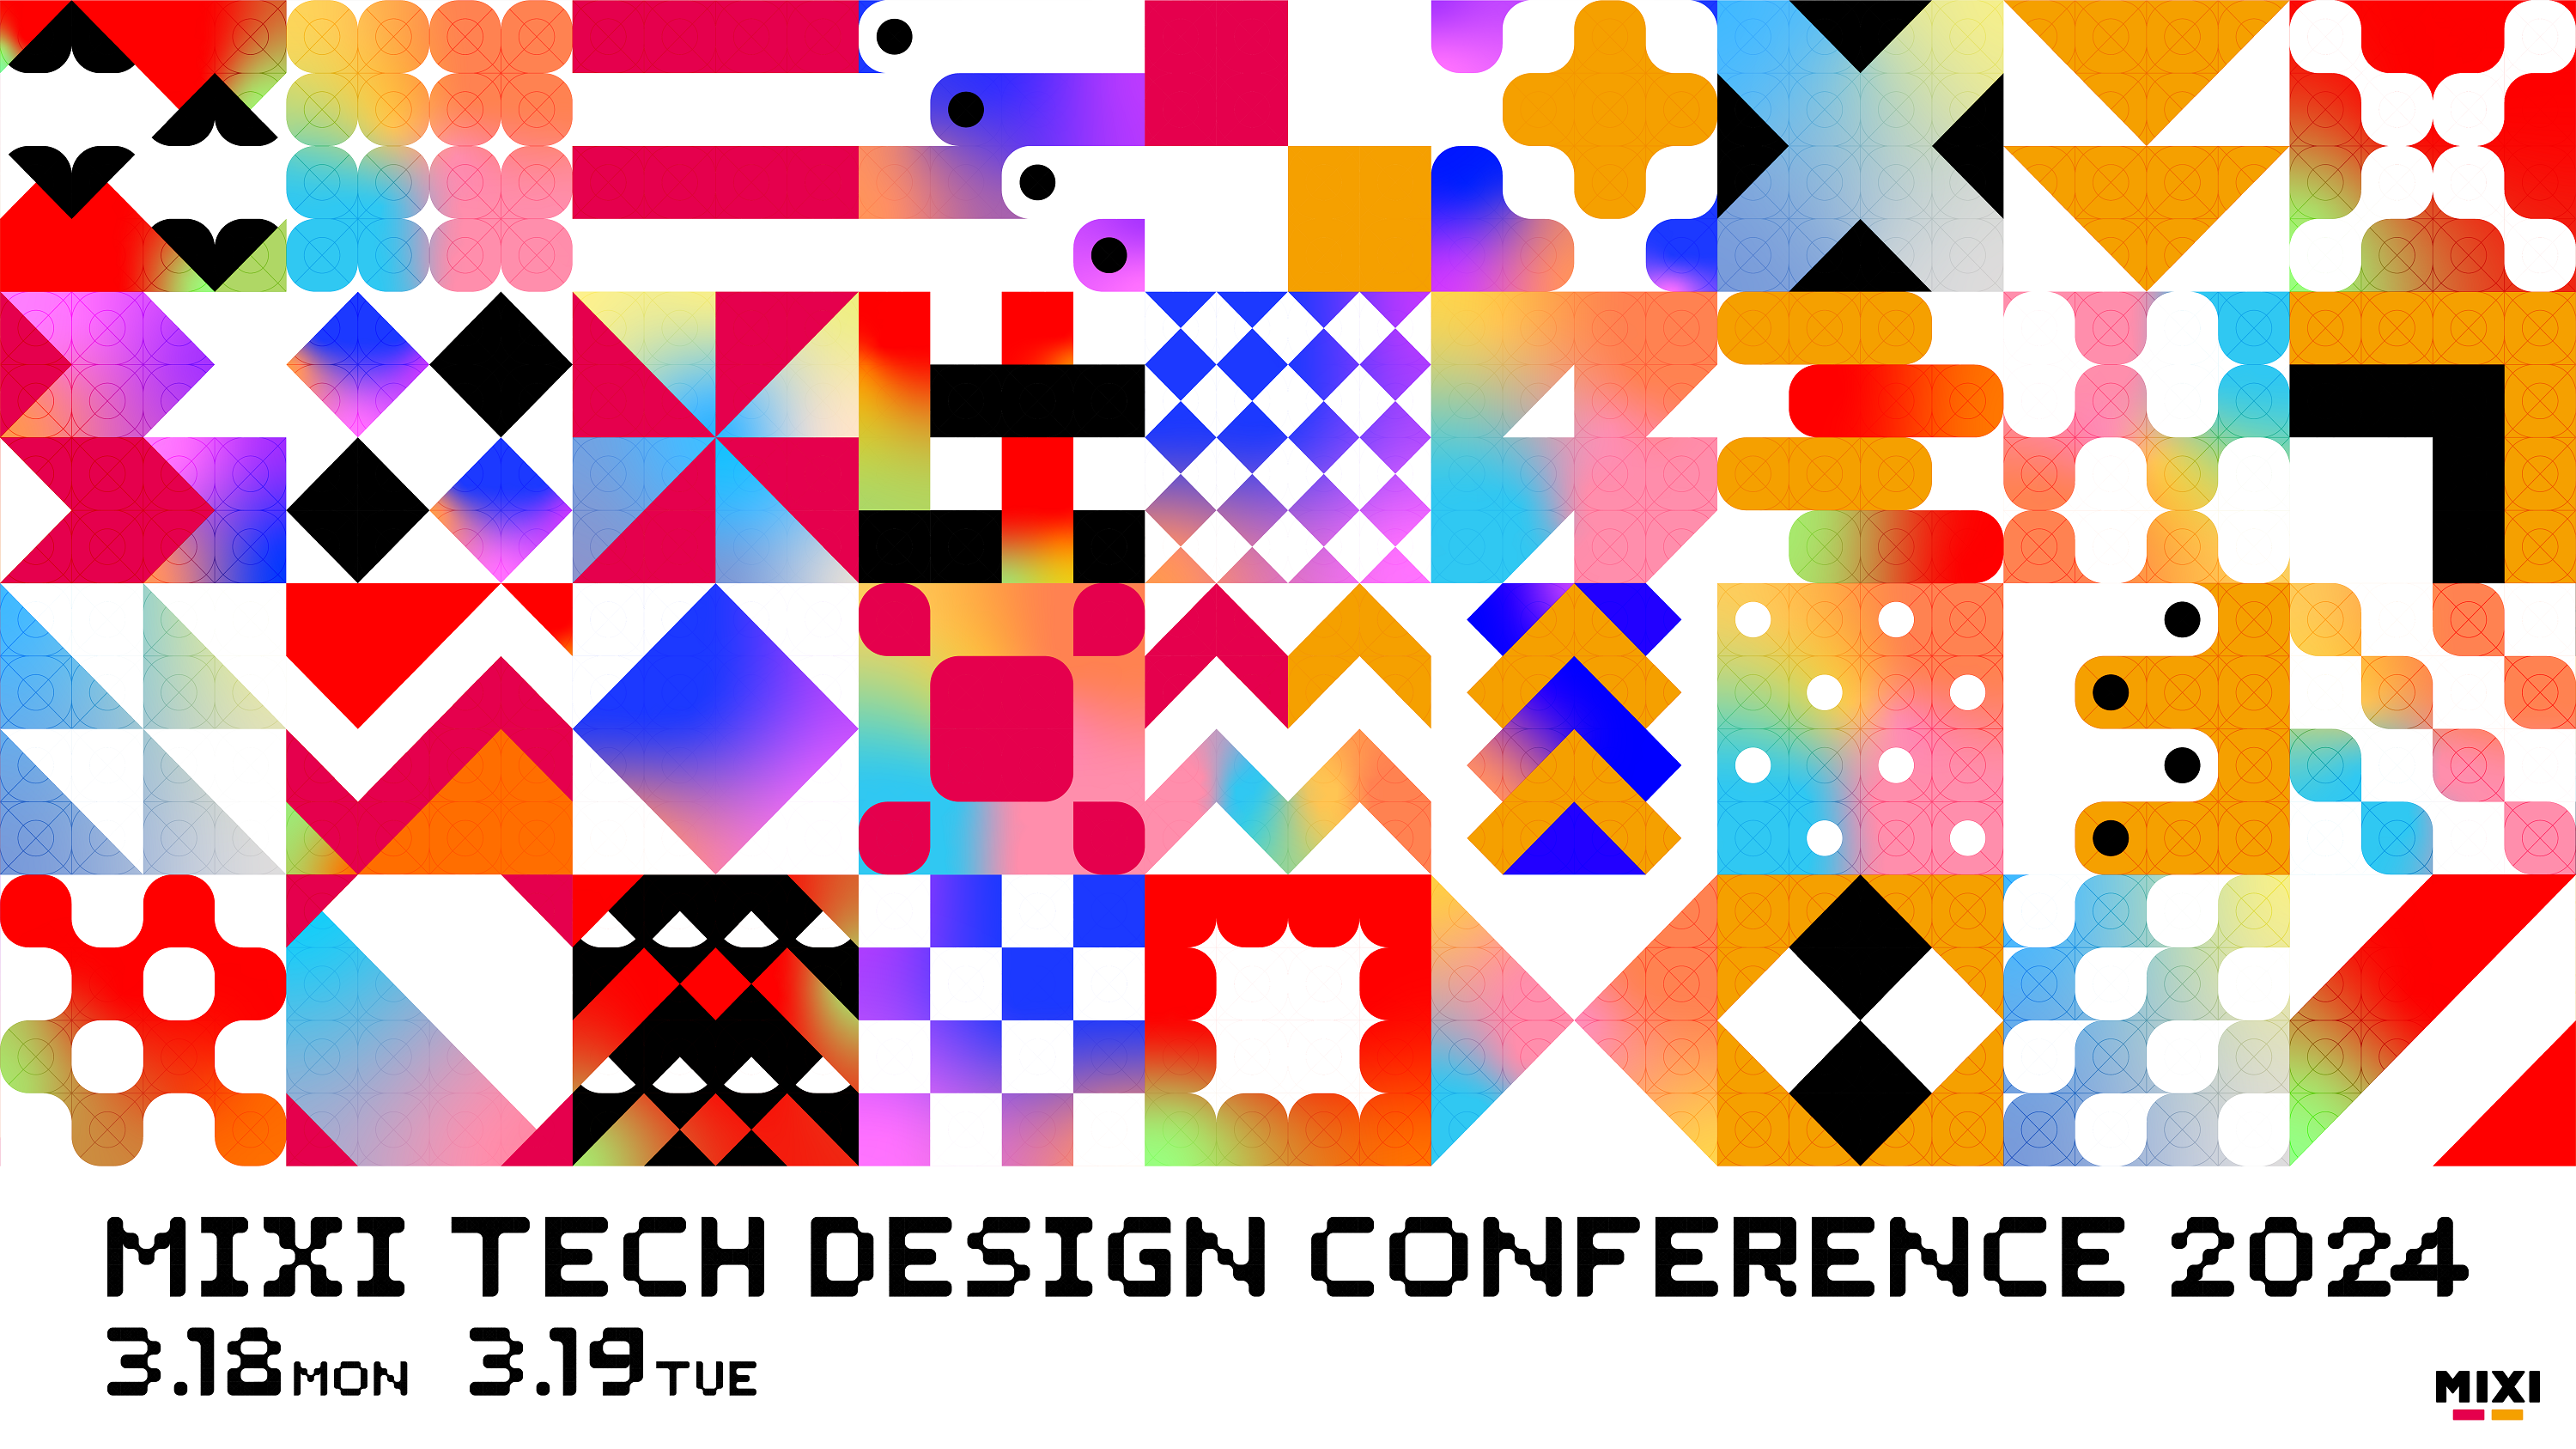 MIXI、エンジニア・デザイナー向けカンファレンス「MIXI TECH DESIGN CONFERENCE 2024」を3月18日（月）・19日（火）にハイブリッド開催